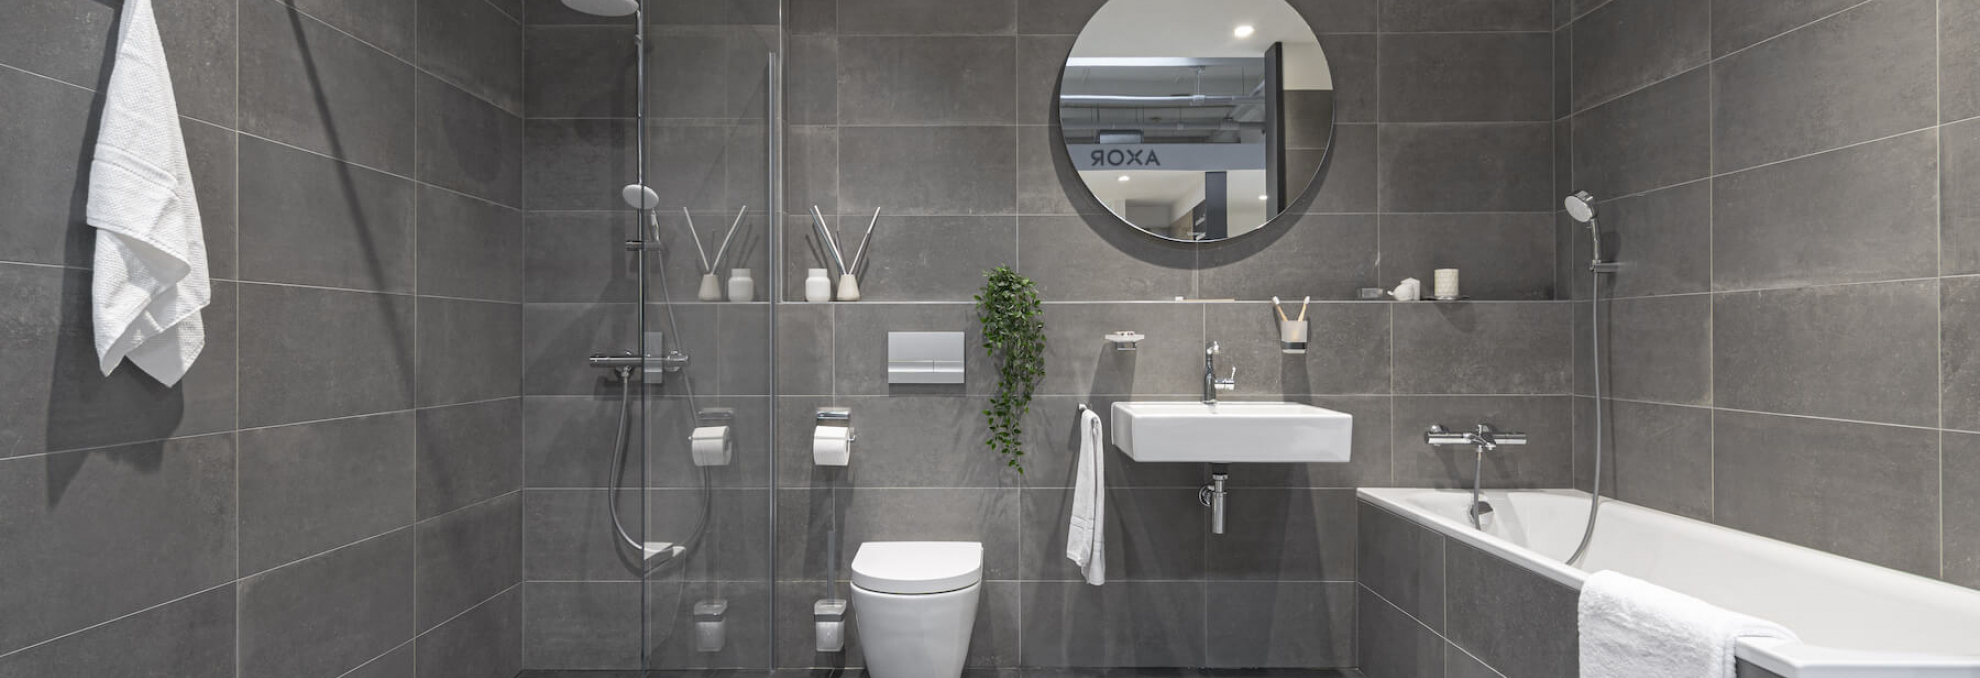 Koupelnové kóje z dlažby Icône Bleu pro projekt Sky Park by Zaha Hadid